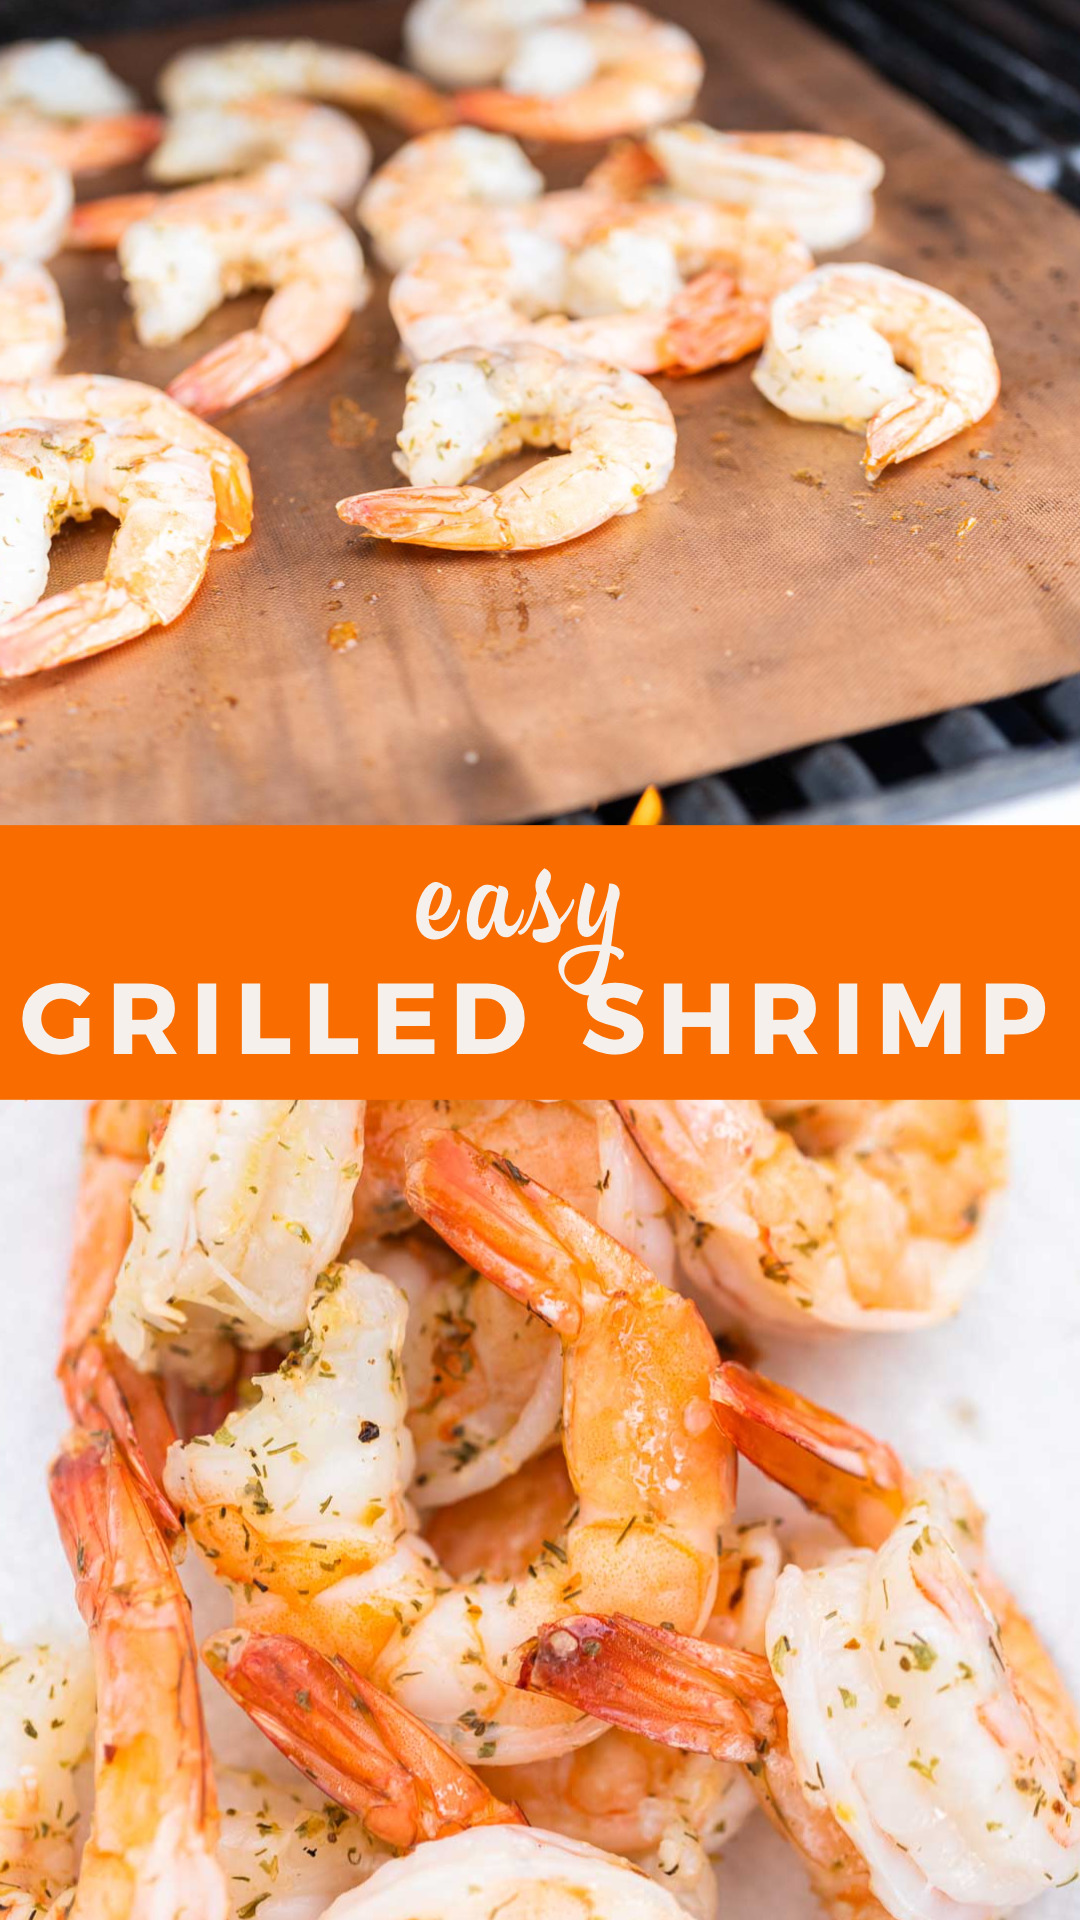 Easy grilled shrimp